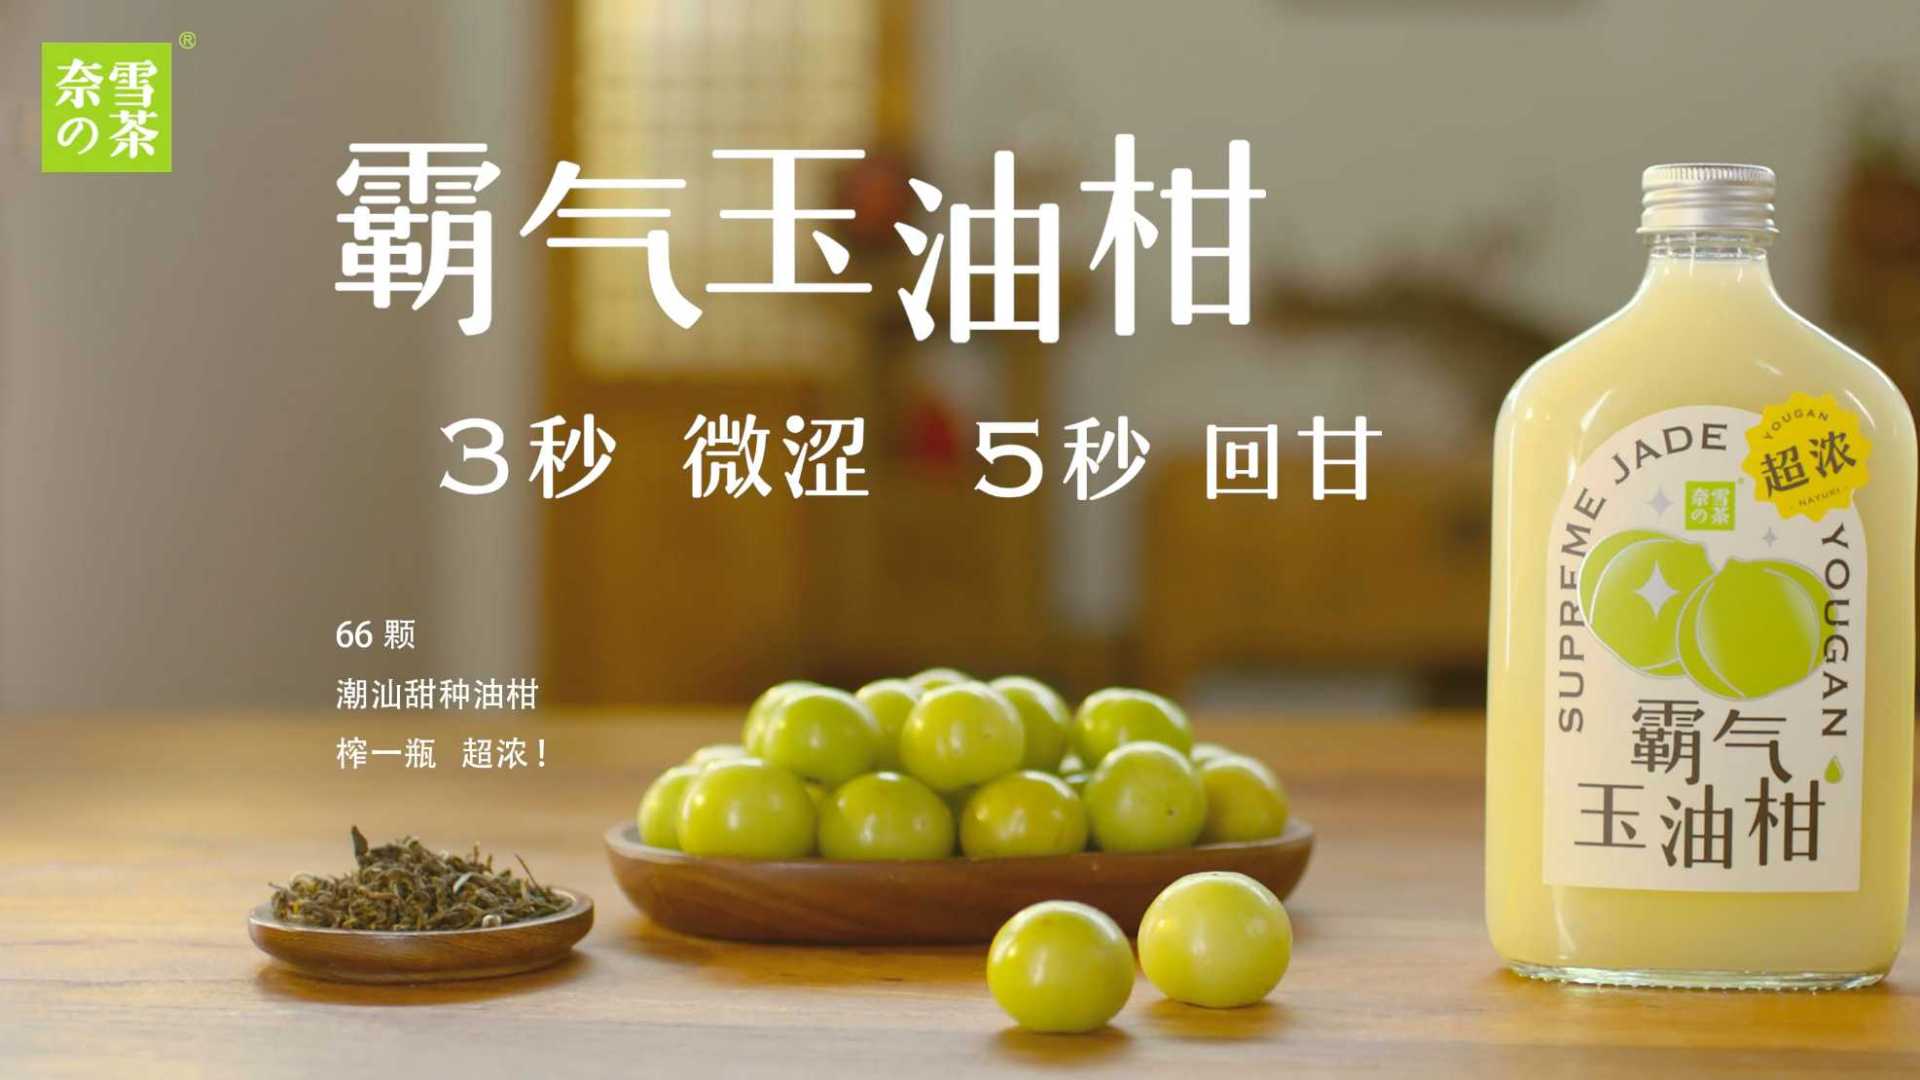 奈雪的茶——油柑茶广告